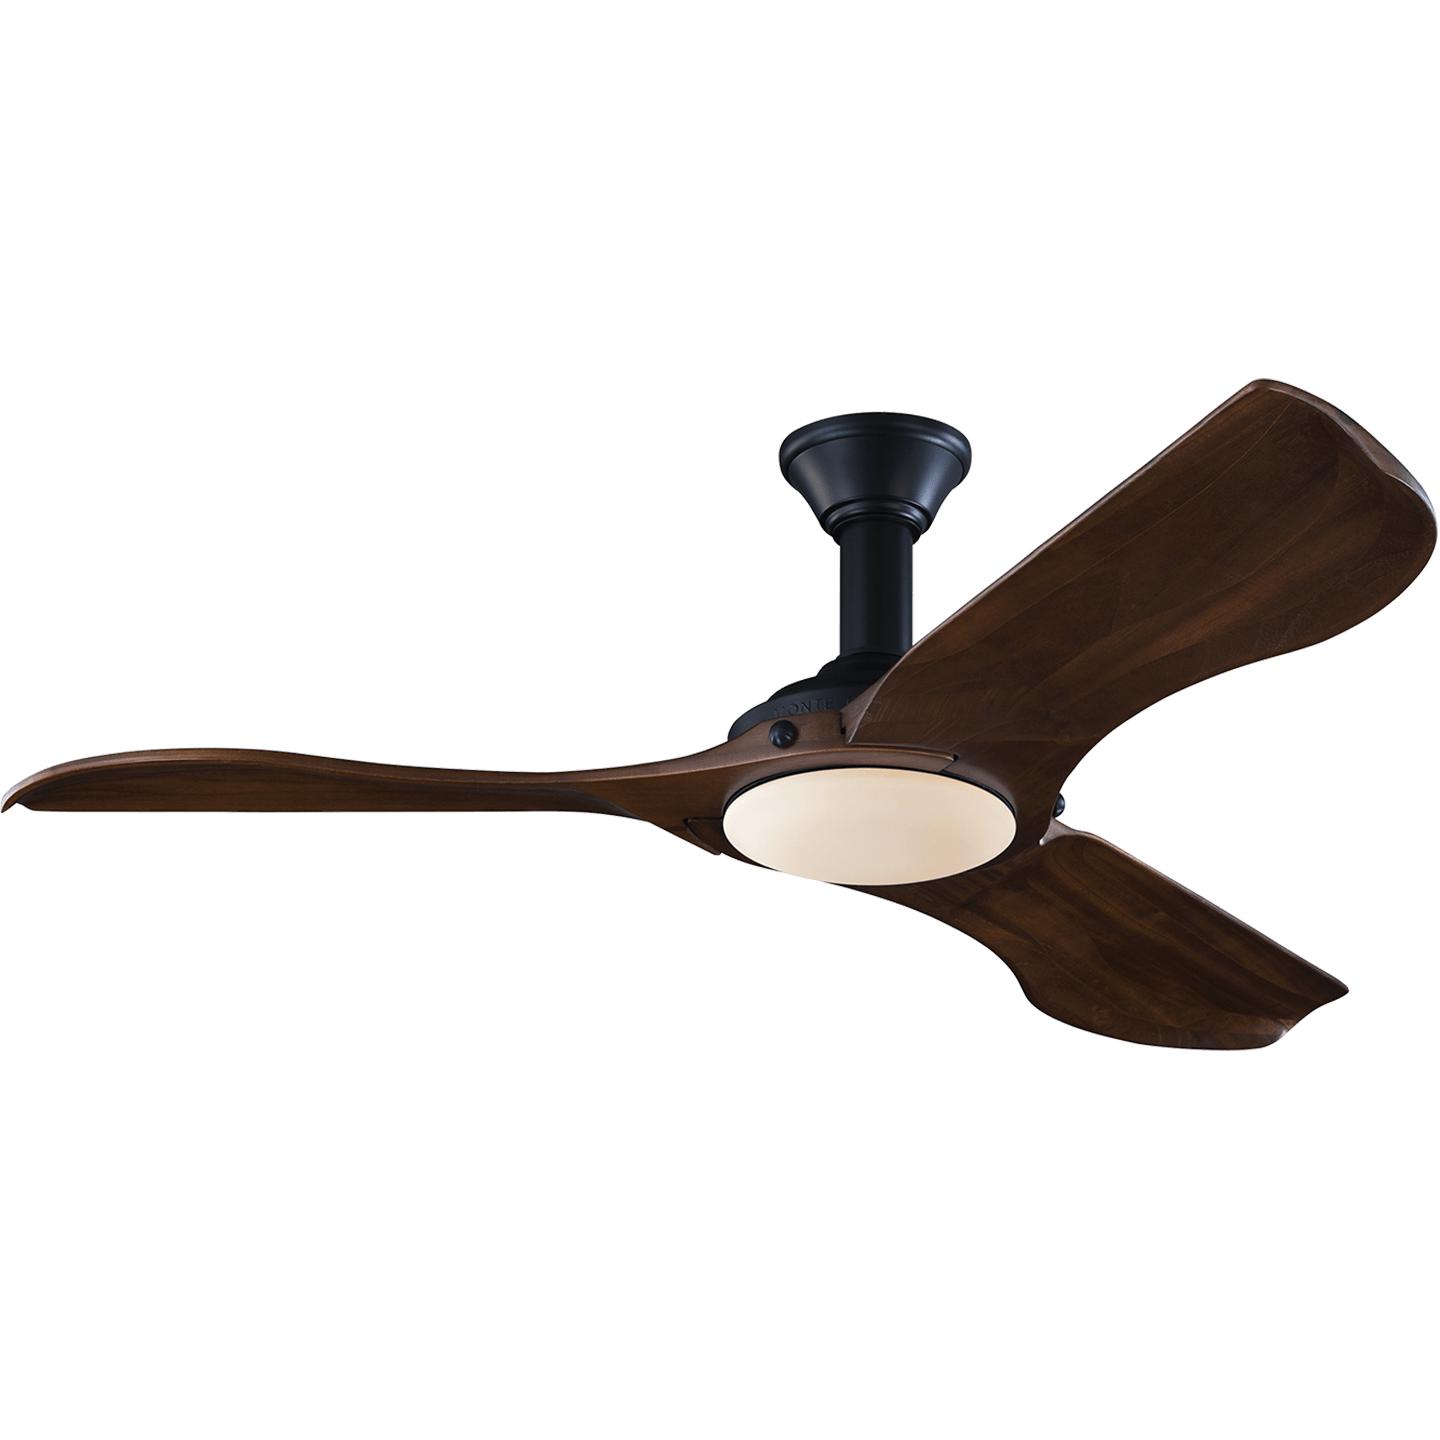 Купить Потолочный вентилятор Minimalist 56" LED Ceiling Fan в интернет-магазине roooms.ru